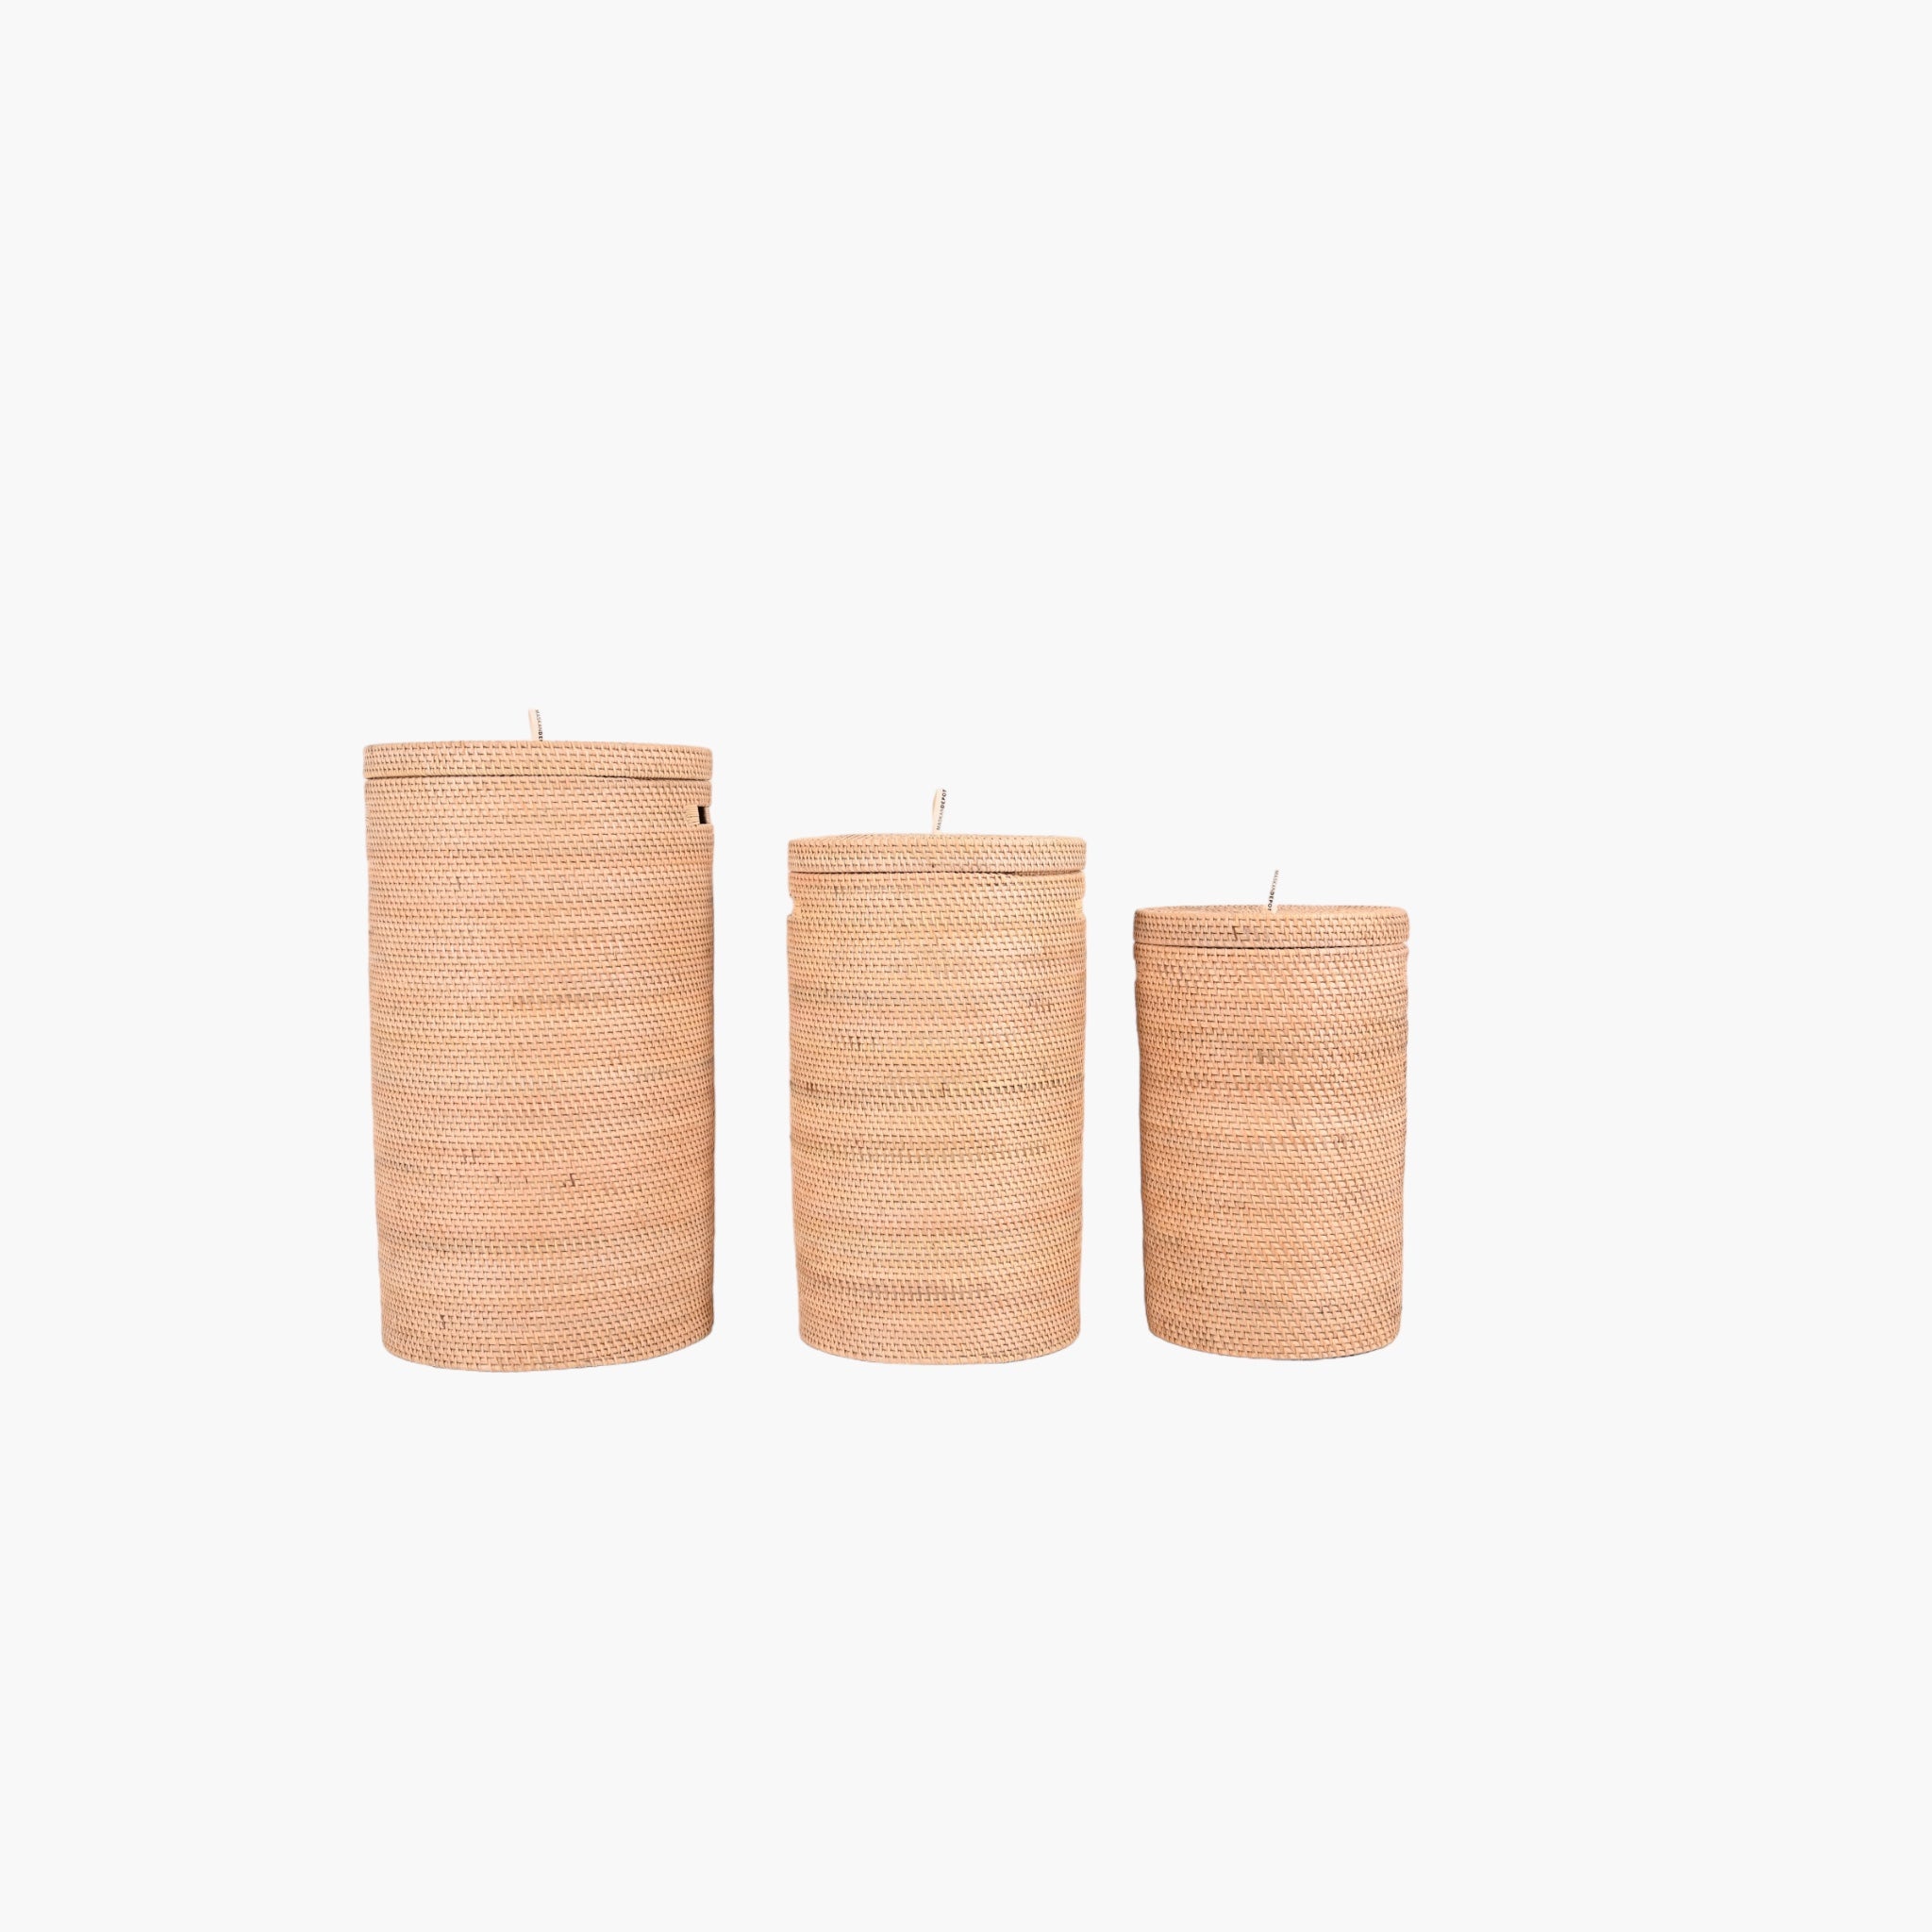 Håndlavet bambuskurv i naturlig bambusdesign